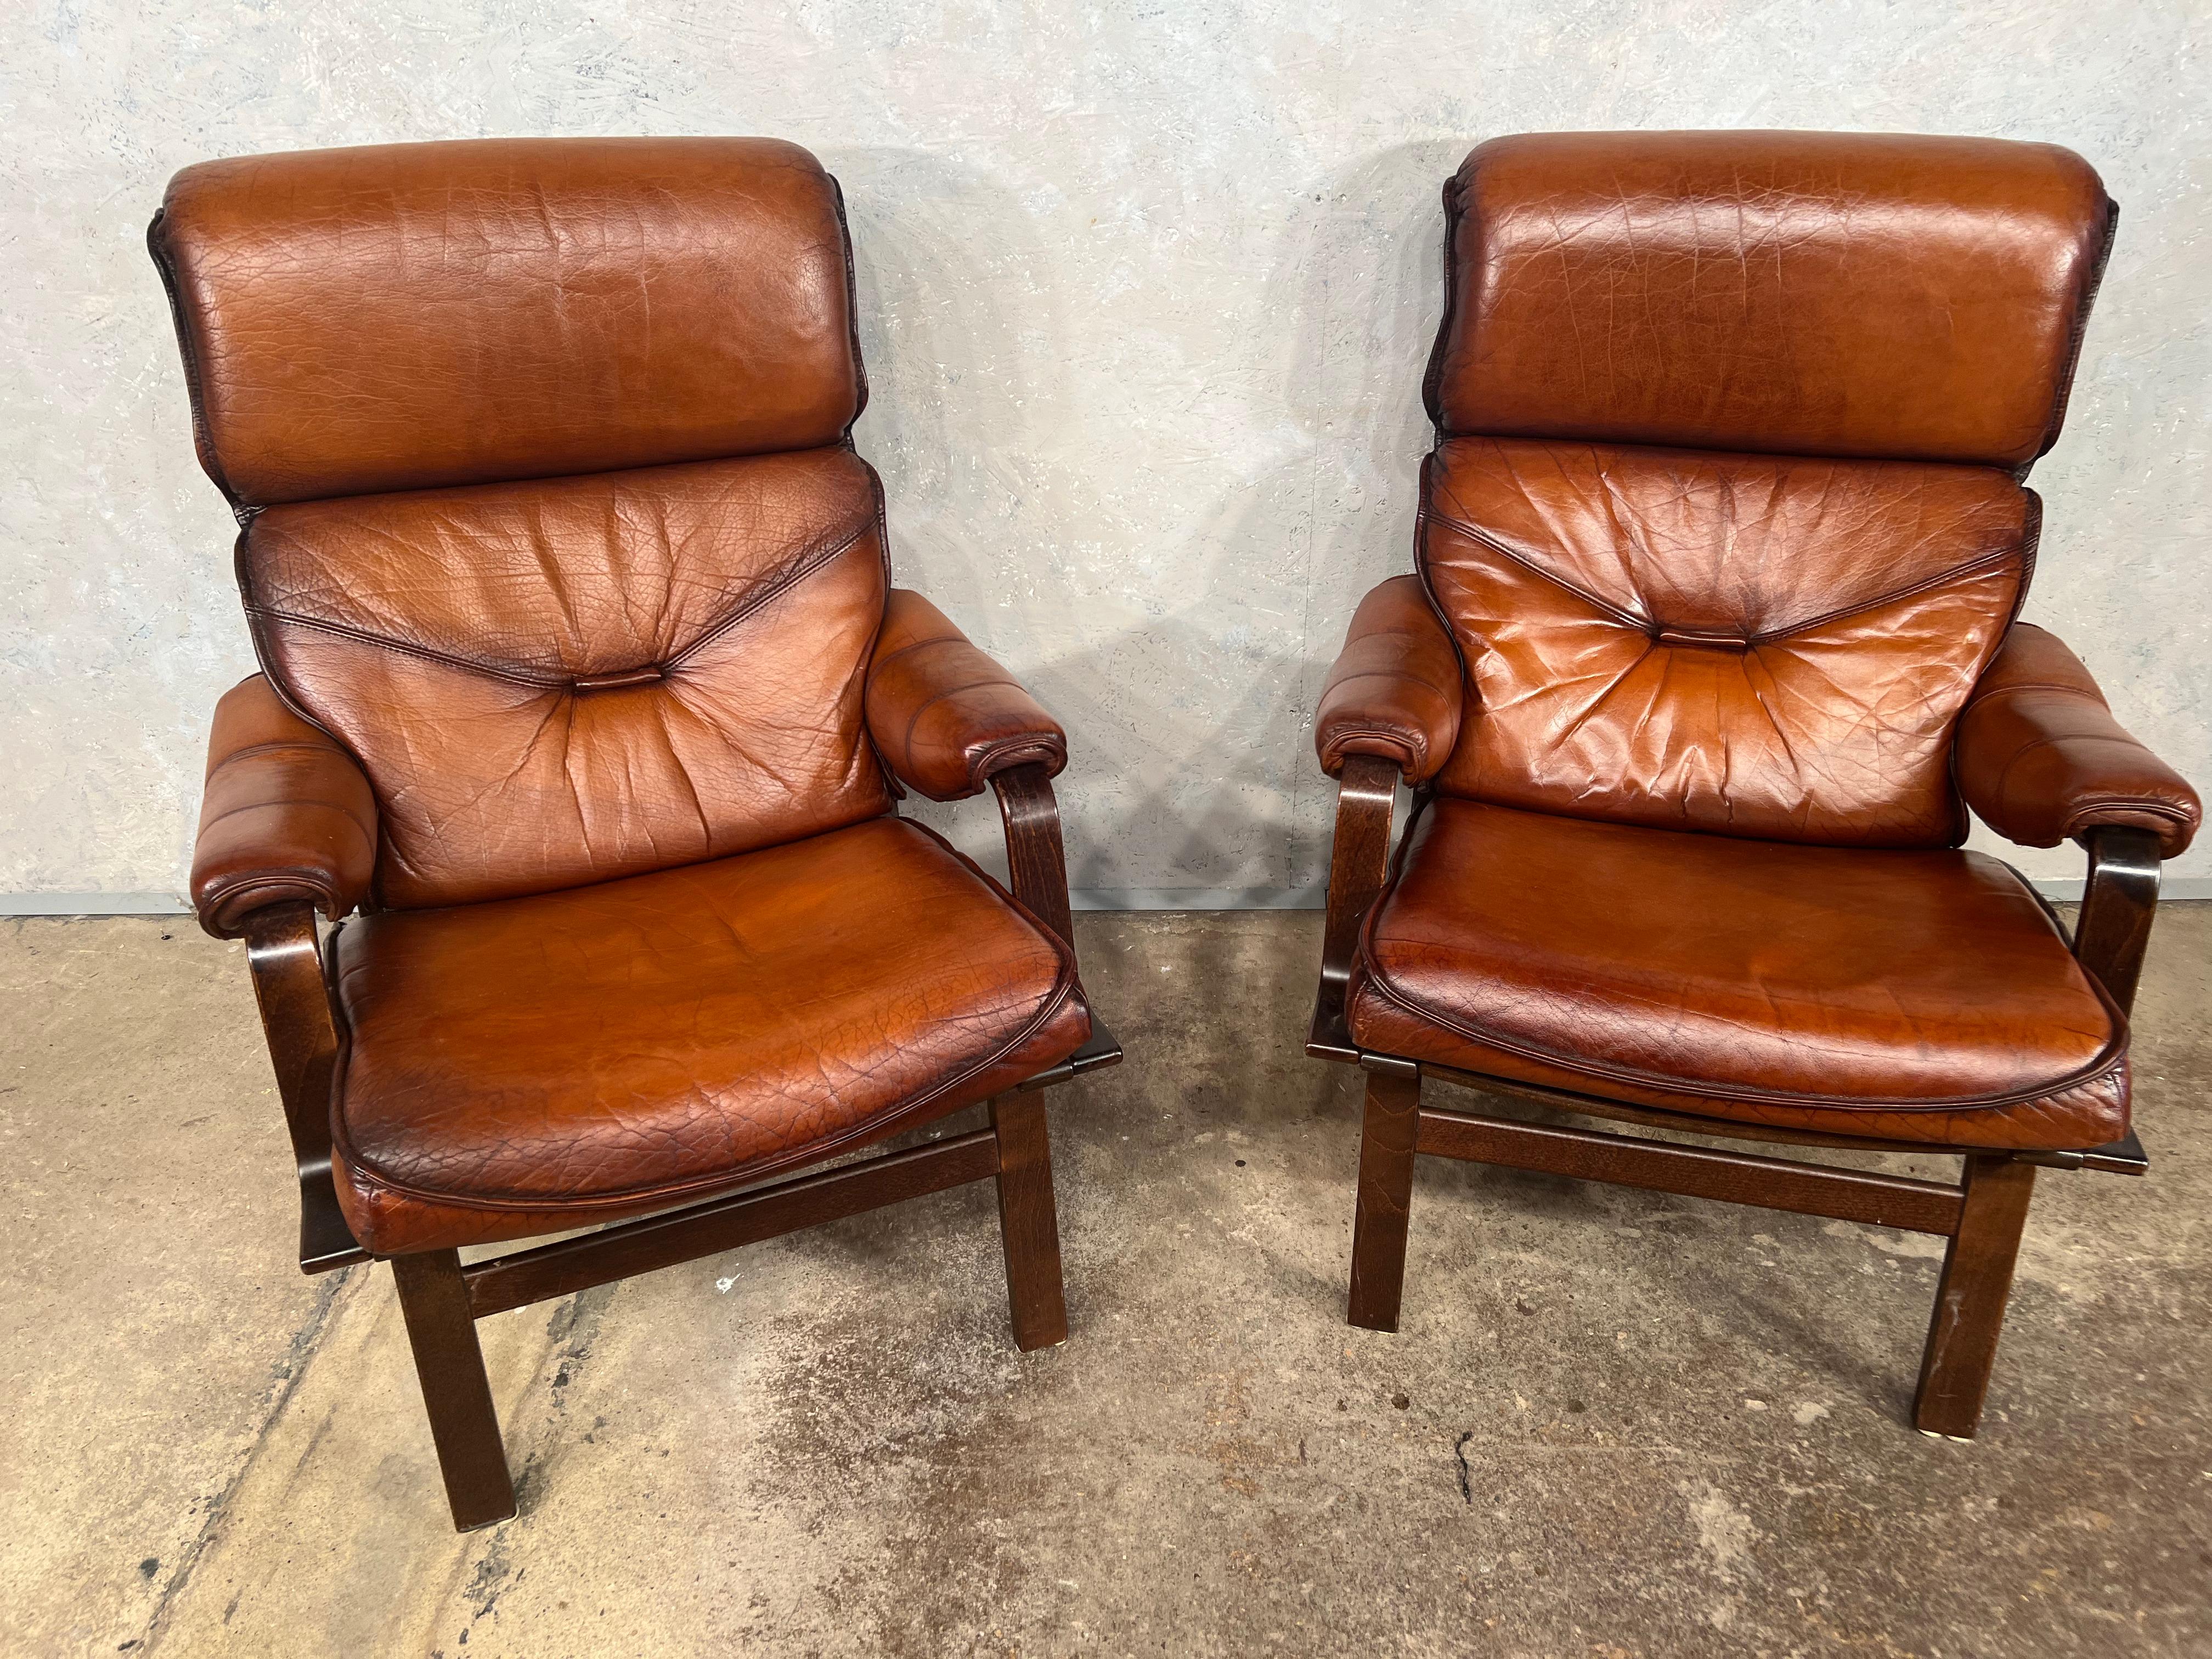 Une superbe paire de chaises danoises en bois courbé, fin des années 70, en cuir teint à la main d'une très belle couleur cognac avec une belle finition.

En très bon état.

Les visites sont les bienvenues dans notre salle d'exposition à Lewes,